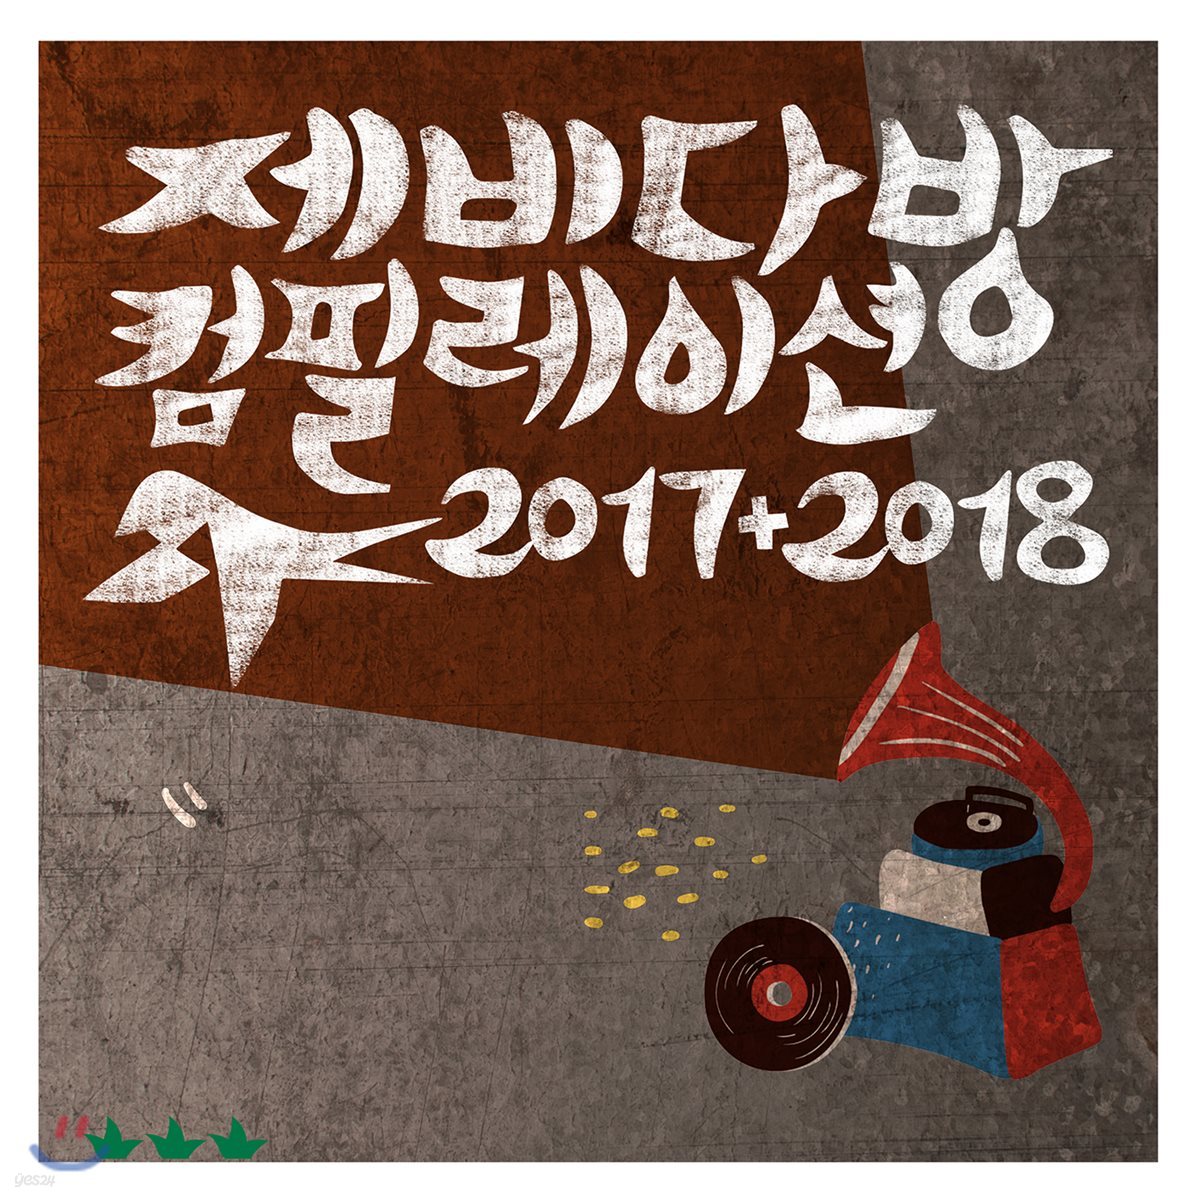 제비다방 컴필레이션 2017+2018